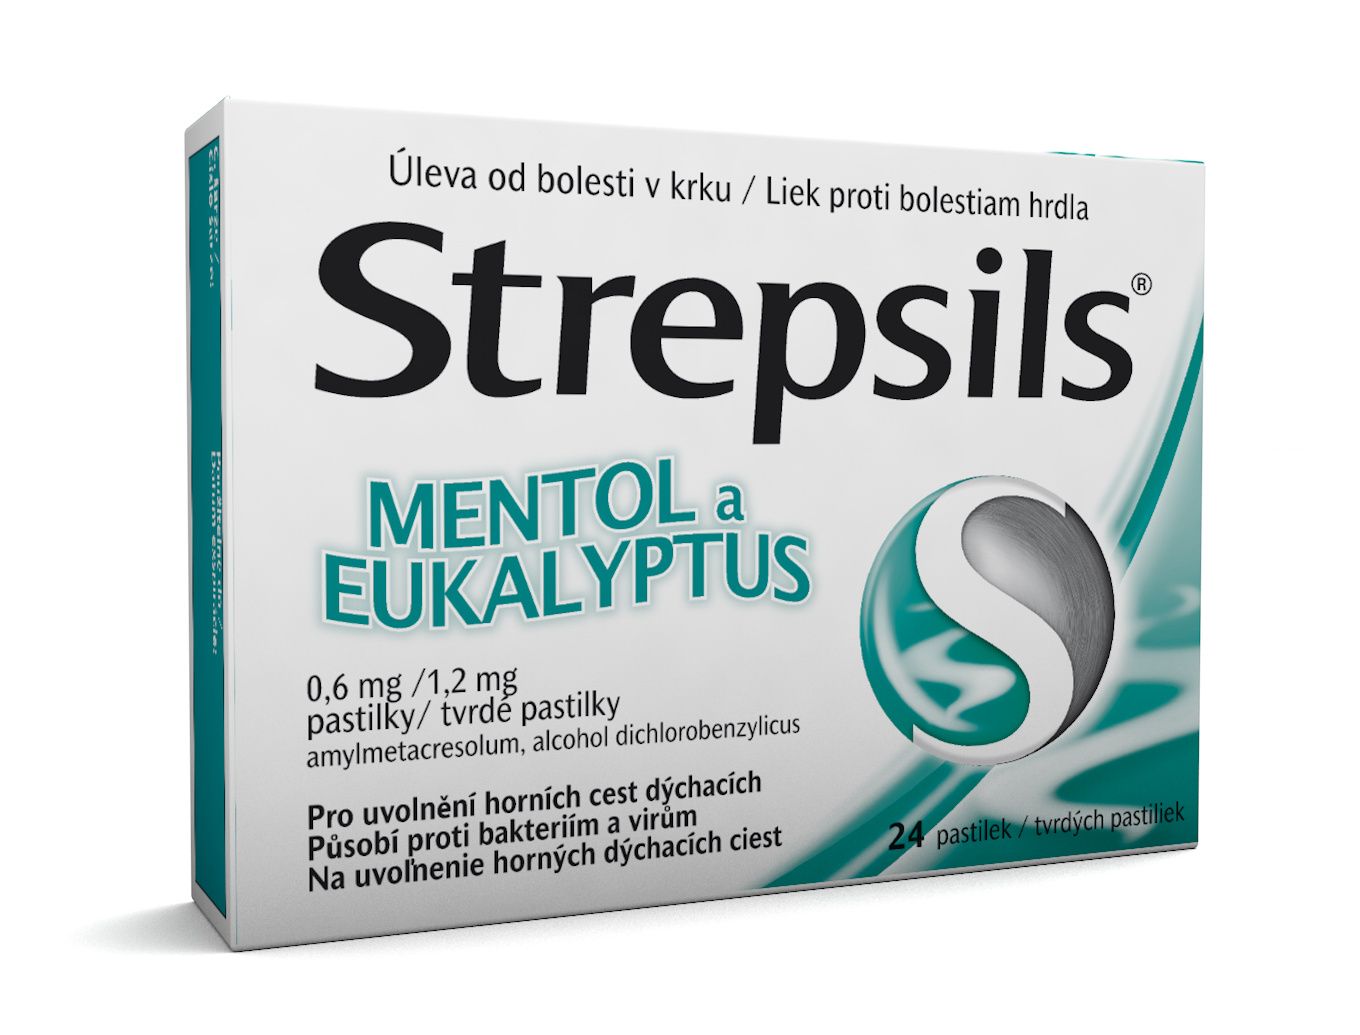 Strepsils Mentol a eukalyptus 24 pastilek Strepsils